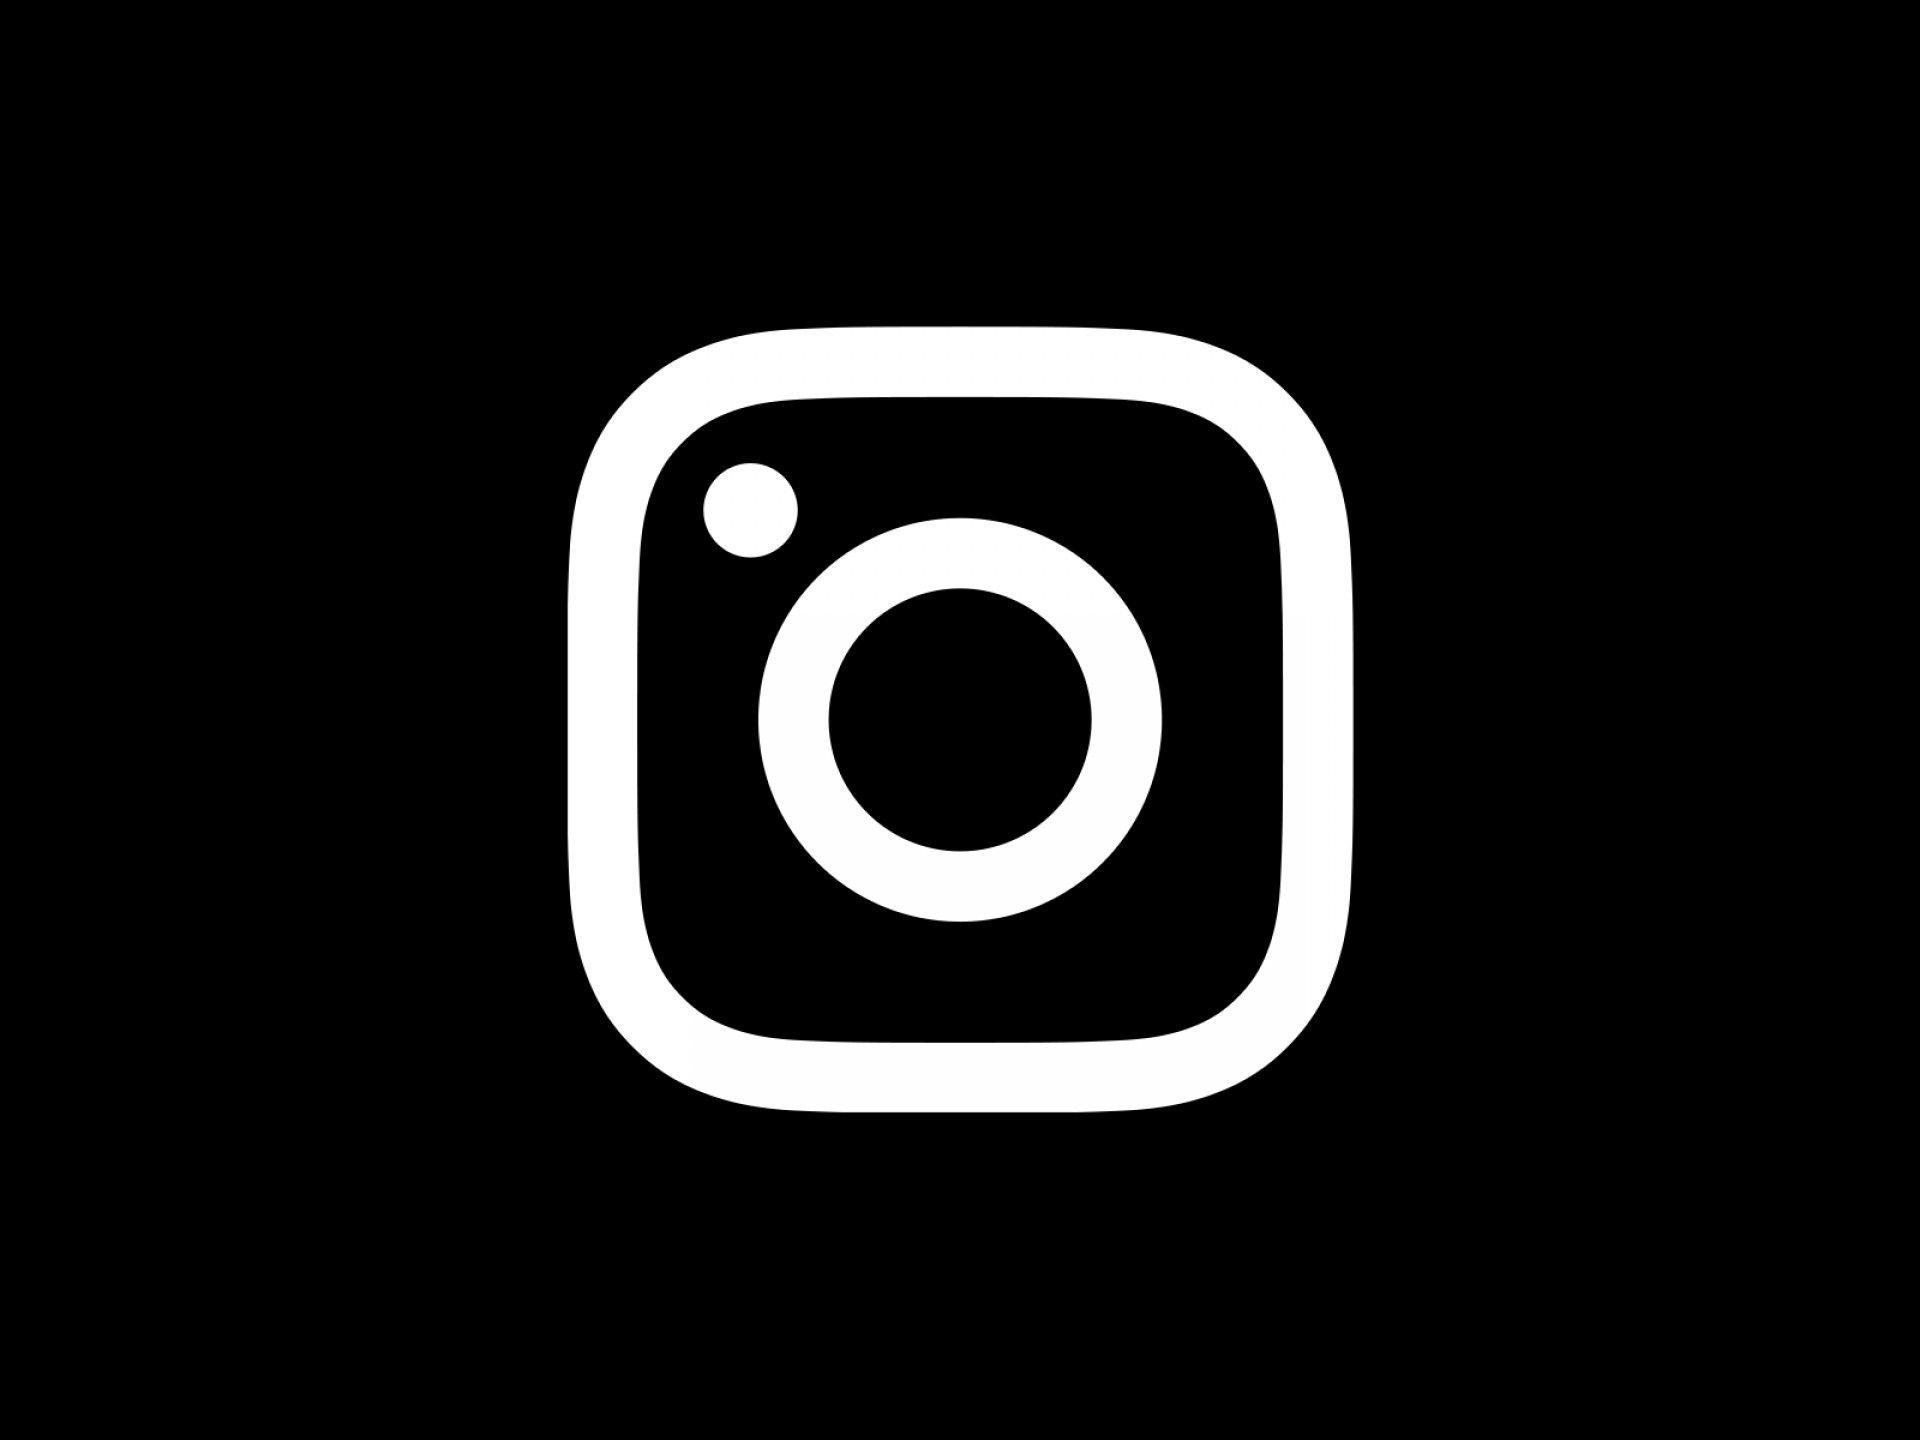 Tải các hình nền Instagram 4K từ Wallpaper Cave để có trải nghiệm tuyệt vời trên chiếc điện thoại của bạn. Bạn sẽ được thưởng thức những bức ảnh tuyệt đẹp với độ phân giải cao và độ sắc nét tuyệt đẹp. Hãy truy cập Wallpaper Cave ngay bây giờ để tải về các hình nền đó.